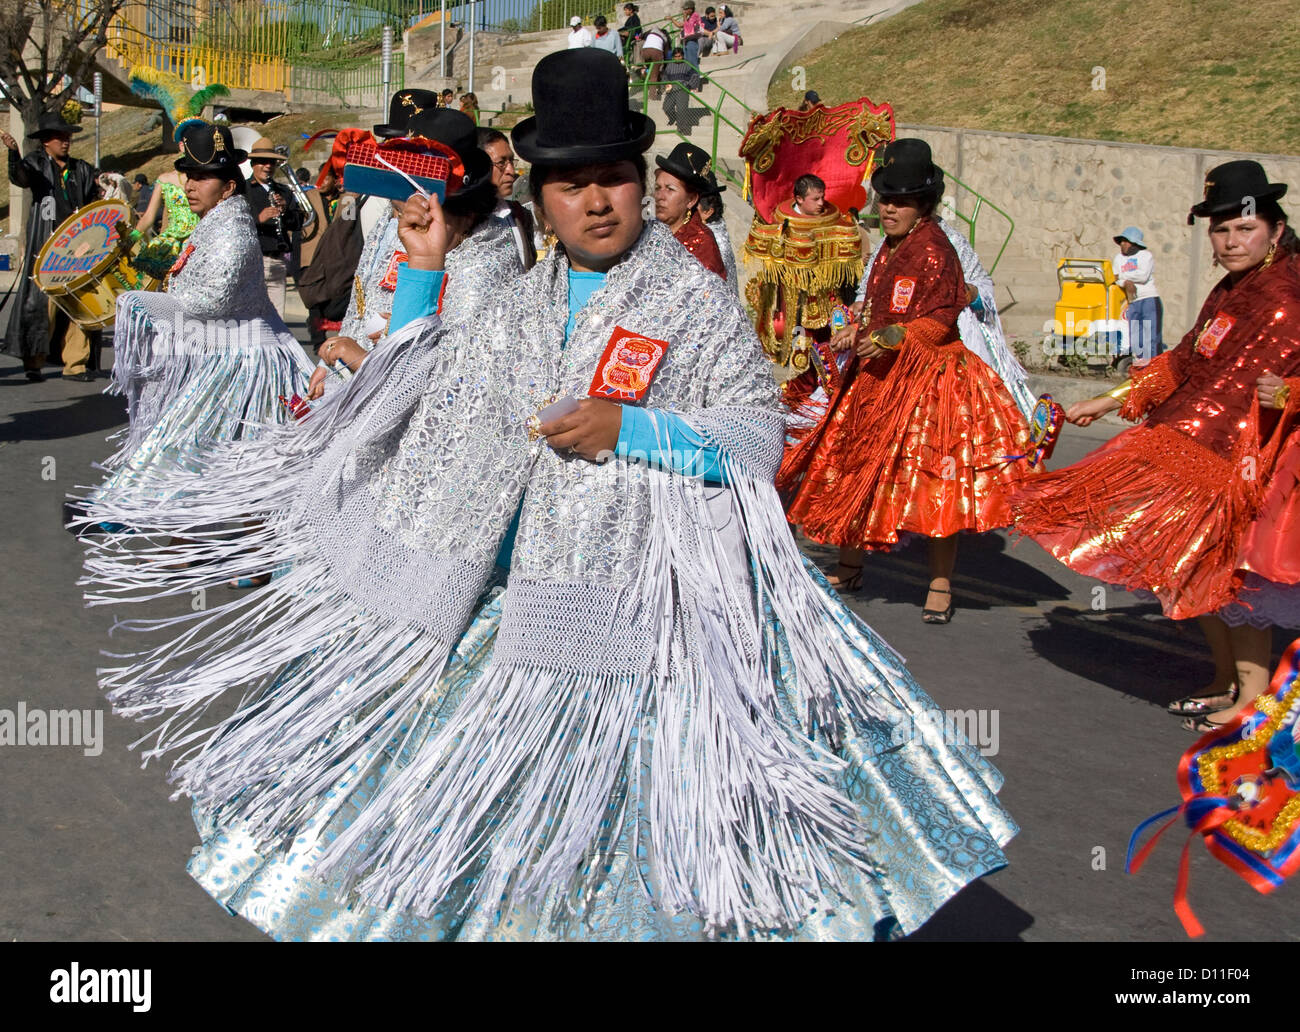 Le donne indigene in argento e rosso vestito tradizionale ballo in strada di carnevale nella città di La Paz, Bolivia, Sud America Foto Stock